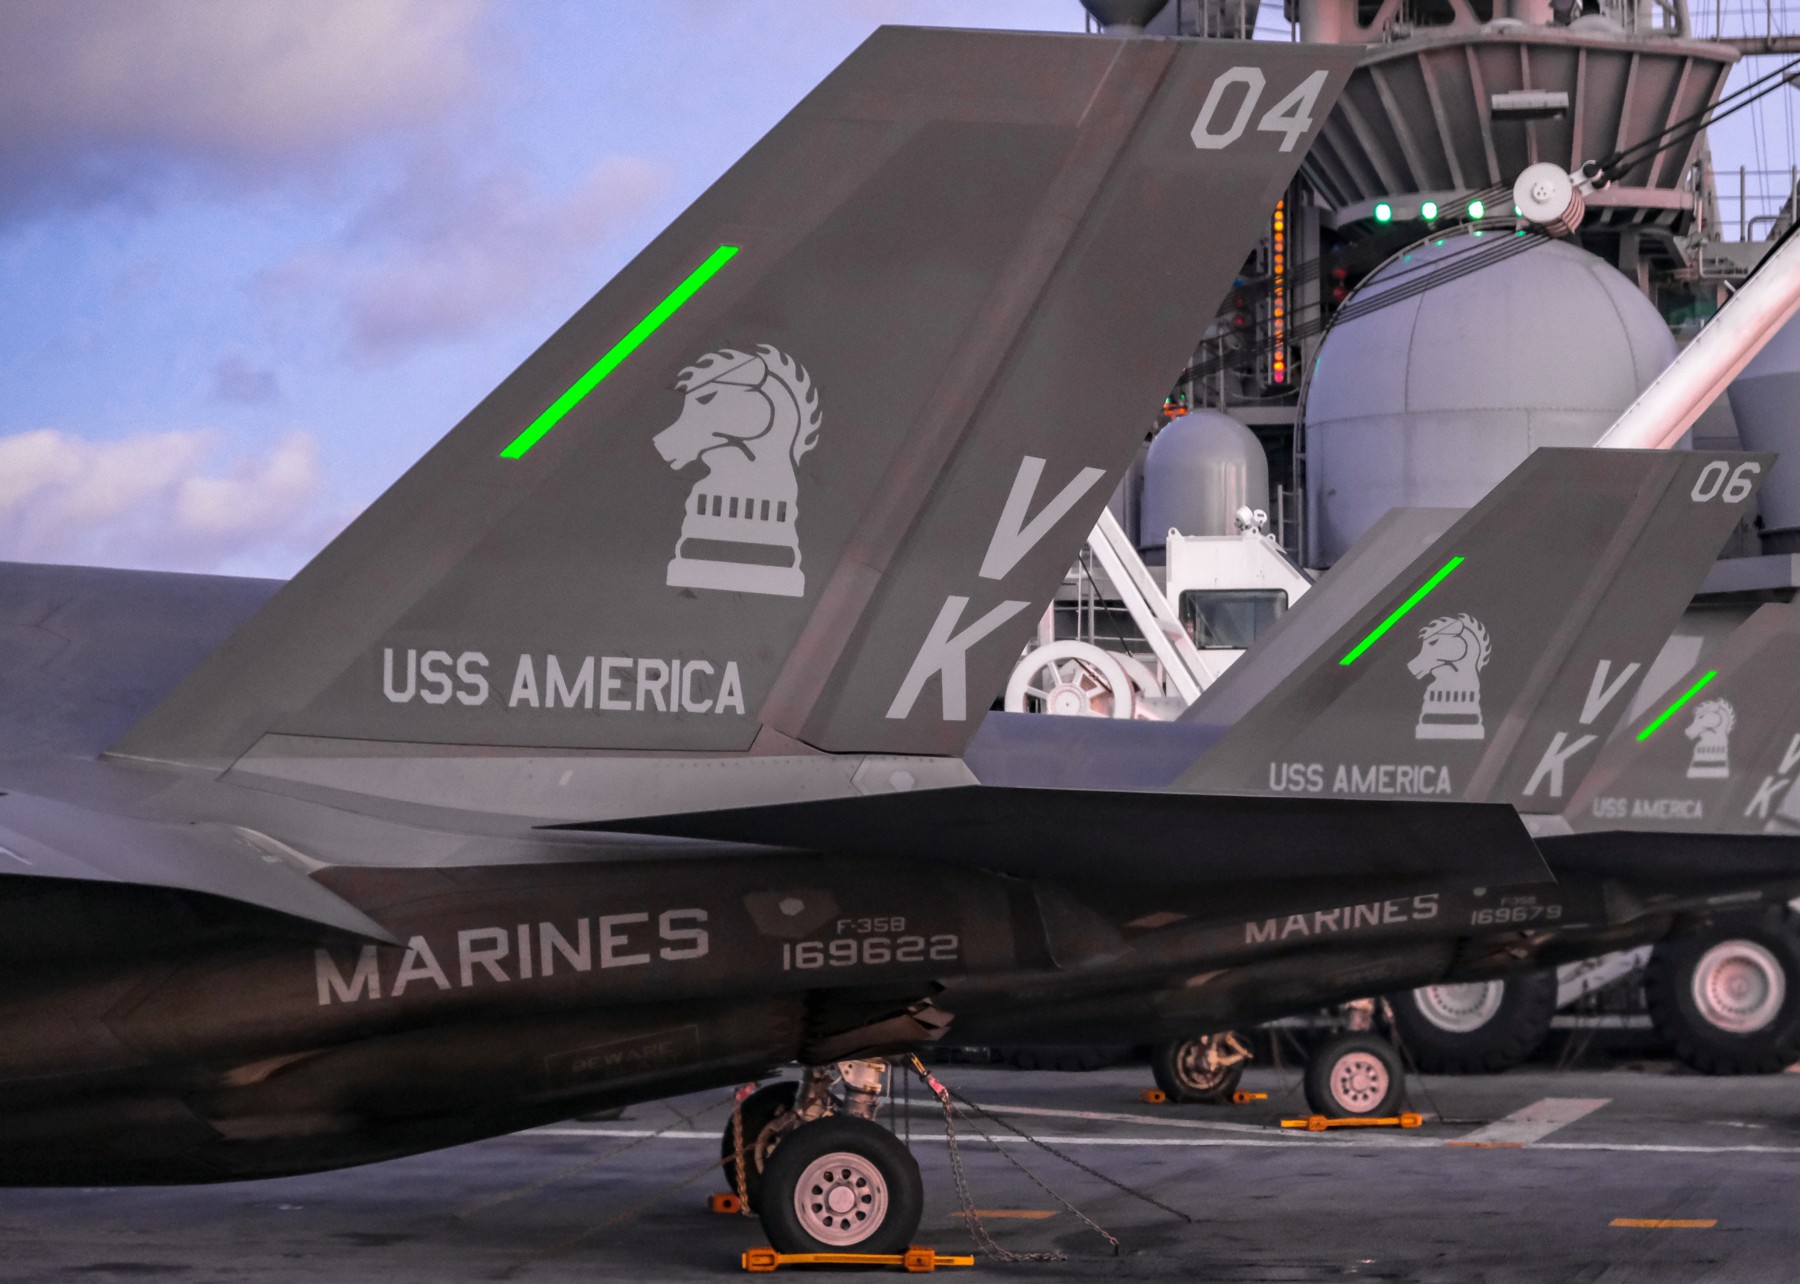 vmfa-121 green knights marine fighter attack squadron usmc f-35b lightning ii 206 uss america lha-6